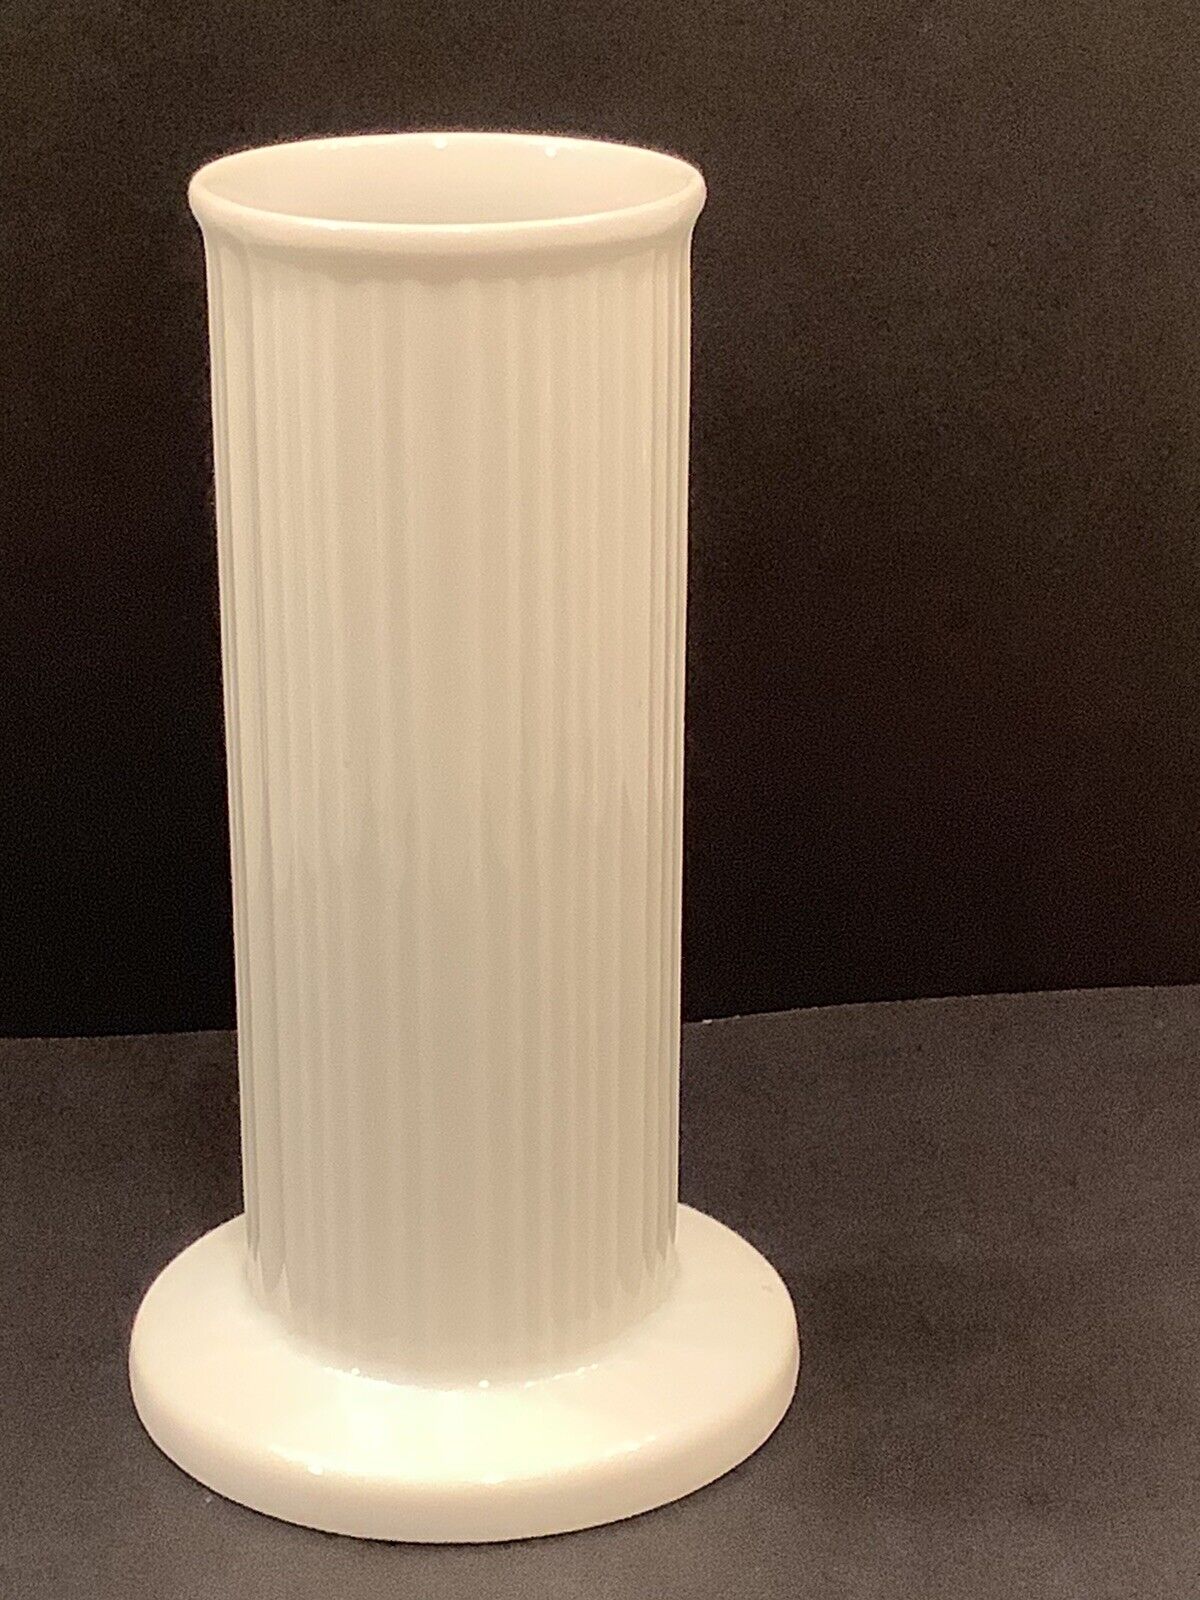 Vintage Rosenthal Studio-Linie Ribbed Porcelain Pedestal Vase. 